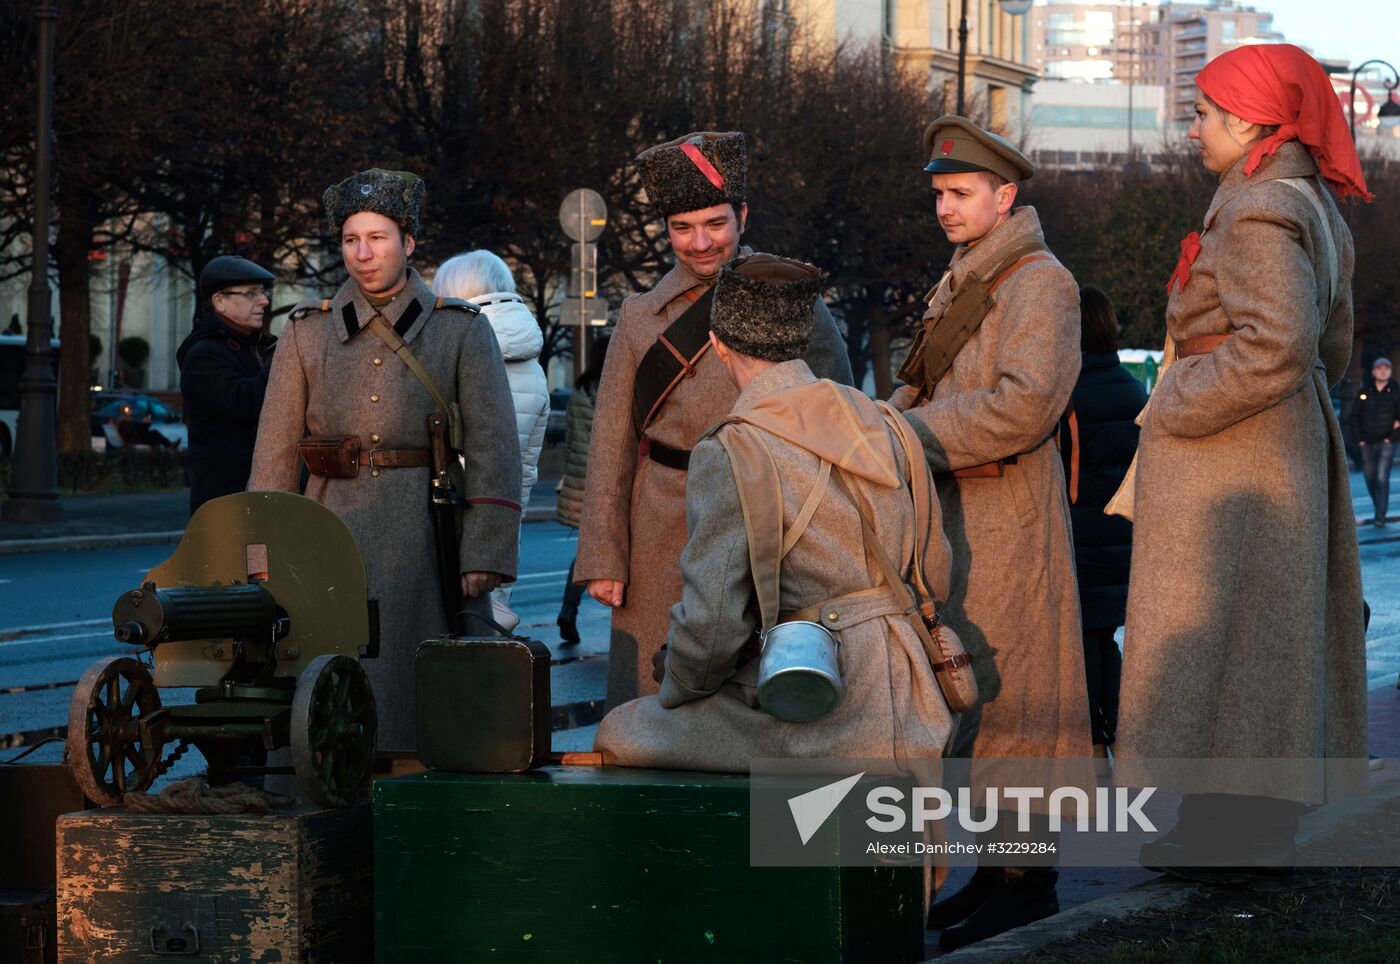 Petrograd 2017 historical reenactment